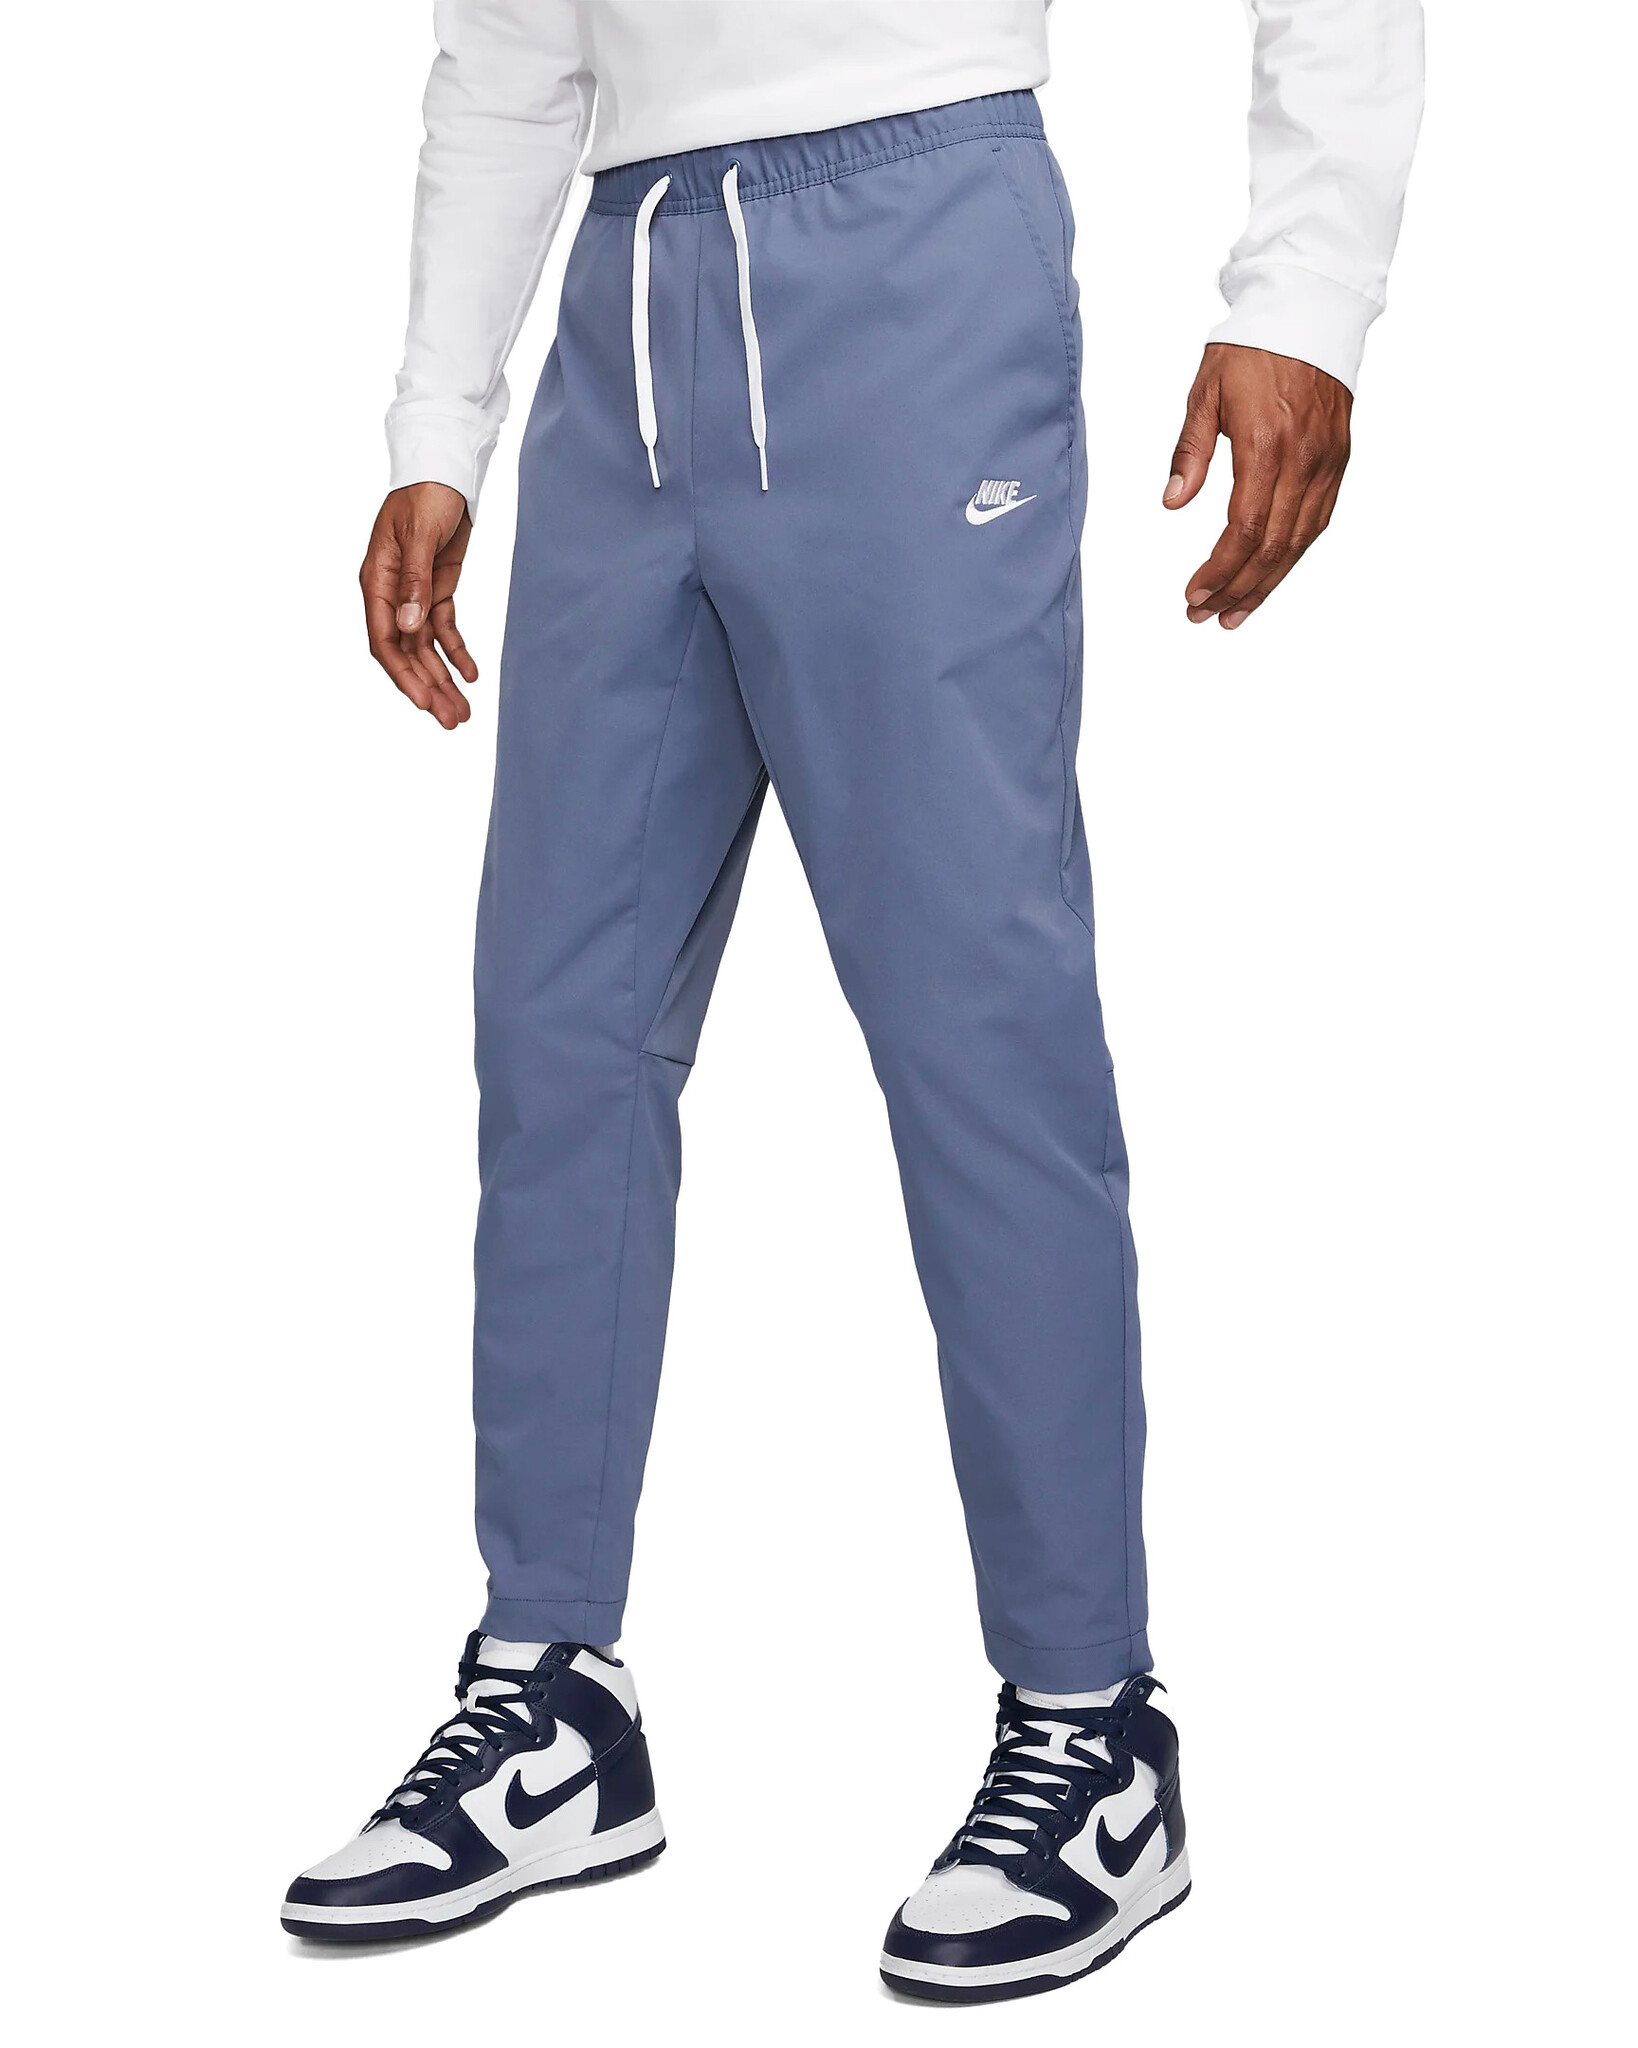 Nike Tech Fleece Woven Joggers Pants Tapered Sportswear Grey